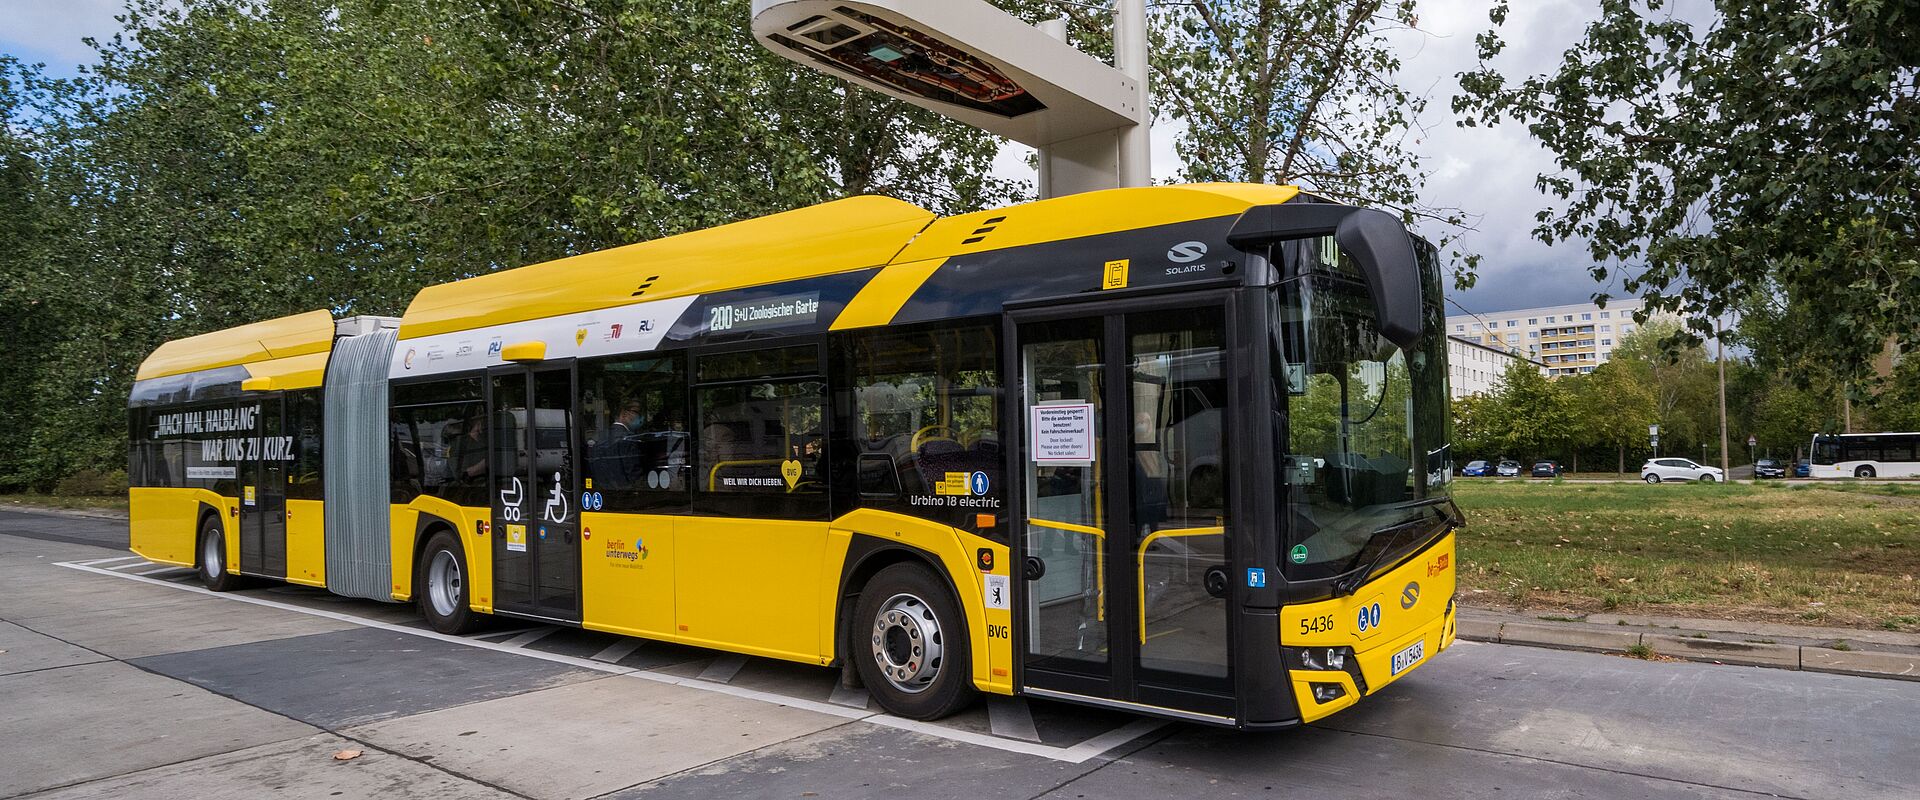 Ziel der Forschungen: Ende 2025 sollen circa 580 E-Busse bei der BVG elektrisch fahren.